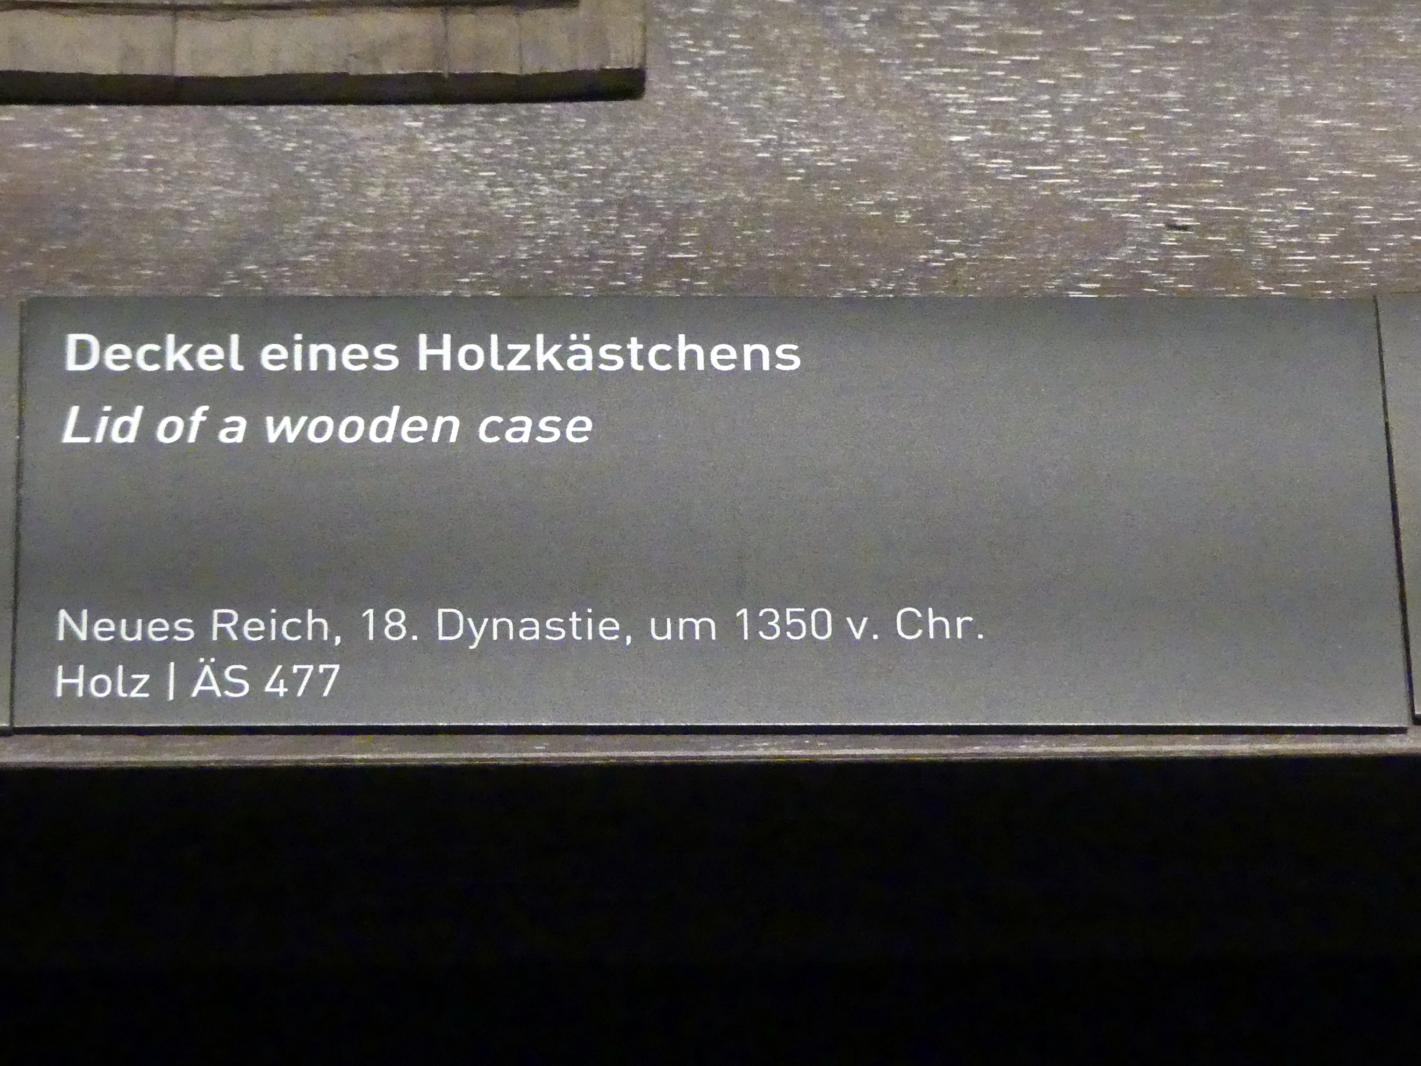 Deckel eines Holzkästchens, 18. Dynastie, Undatiert, 1350 v. Chr., Bild 2/2